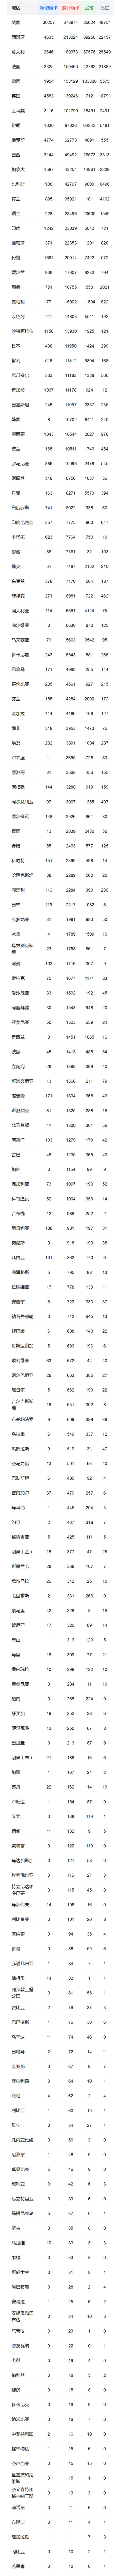 中国以外新冠确诊病例达2460490例